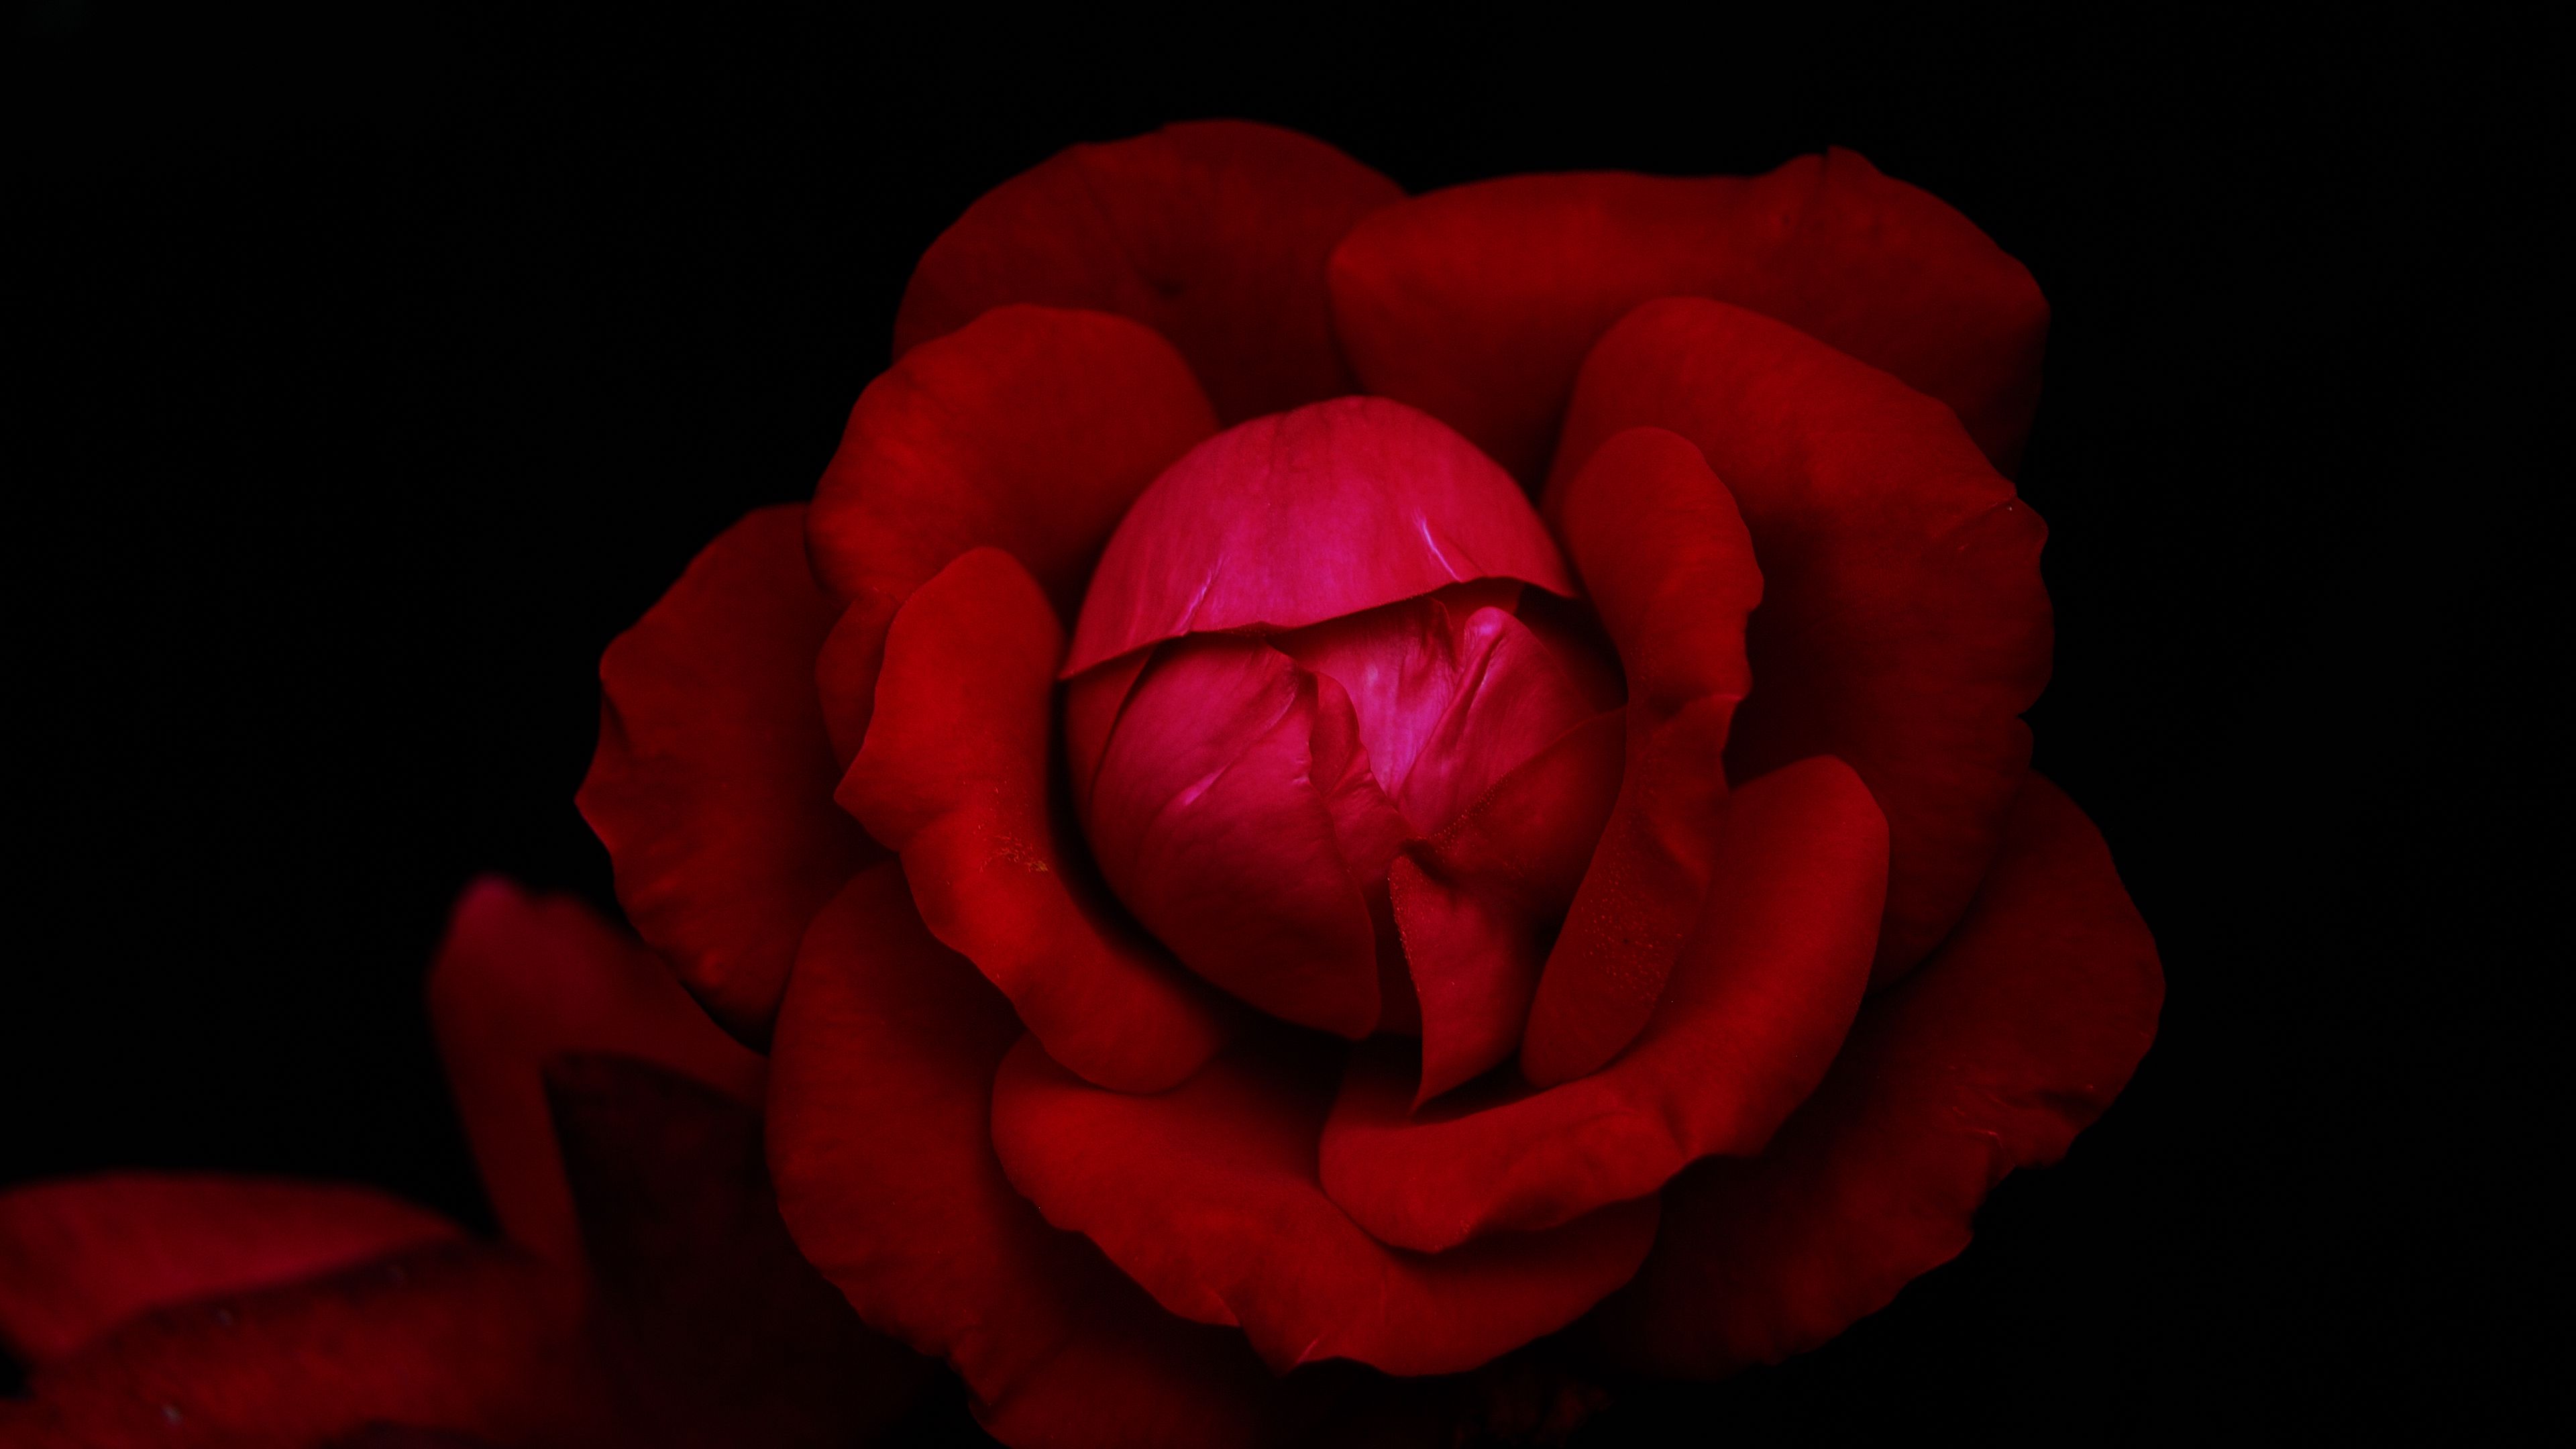 Hoa hồng đỏ: Cánh hoa hồng đỏ luôn là biểu tượng của tình yêu và đam mê. Với sắc đỏ rực rỡ và hương thơm quyến rũ, hoa hồng đỏ chắc chắn sẽ khiến bạn phải say đắm. Hãy chiêm ngưỡng bức ảnh về những bông hoa hồng đỏ tuyệt đẹp này và cảm nhận sức cuốn hút của chúng đối với tình cảm của bạn.